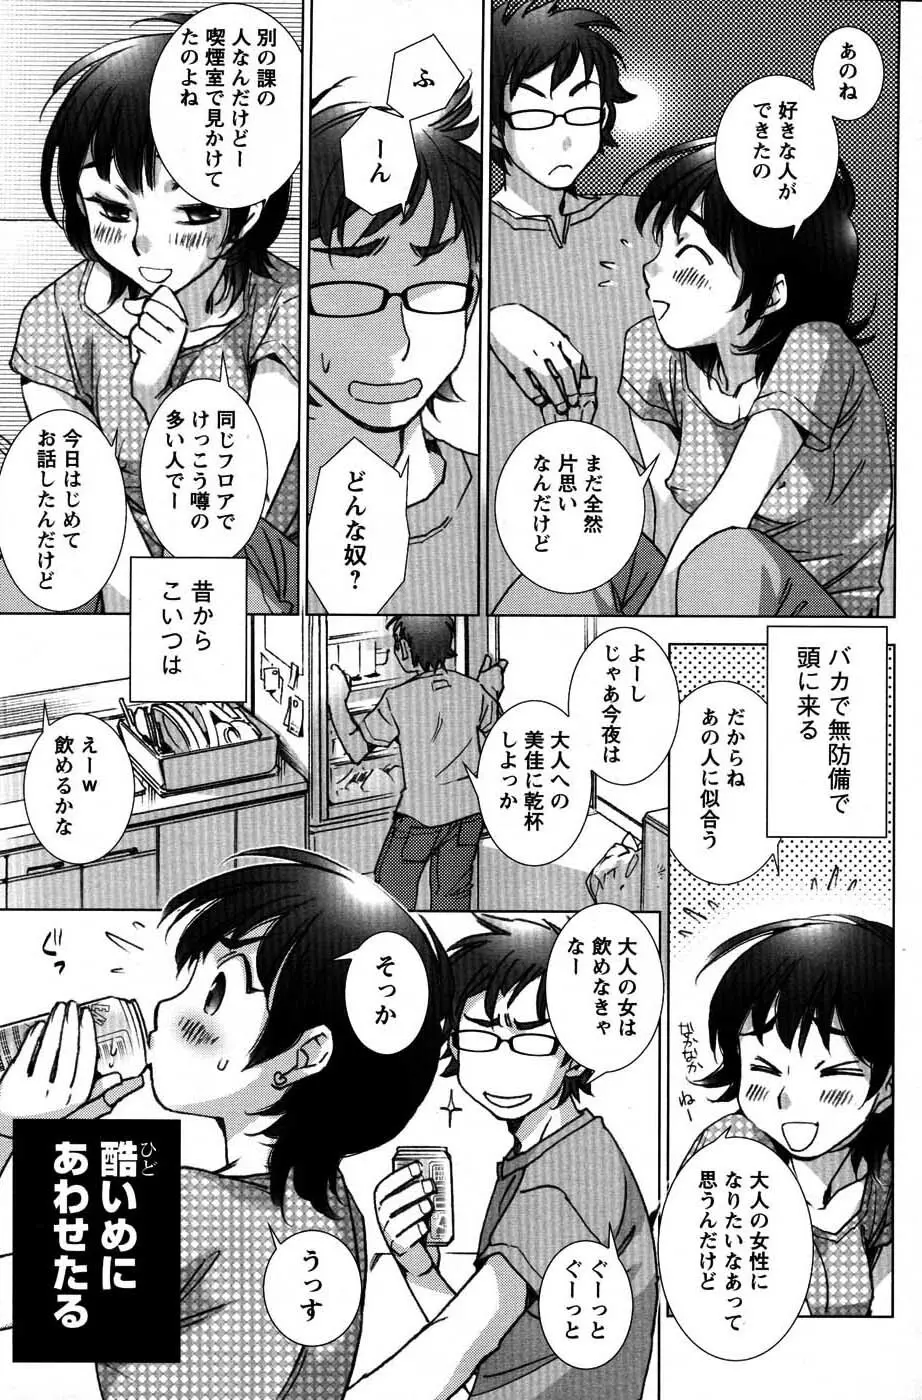 メンズヤングスペシャルIKAZUCHI雷 Vol.3 2007年9月号増刊 82ページ